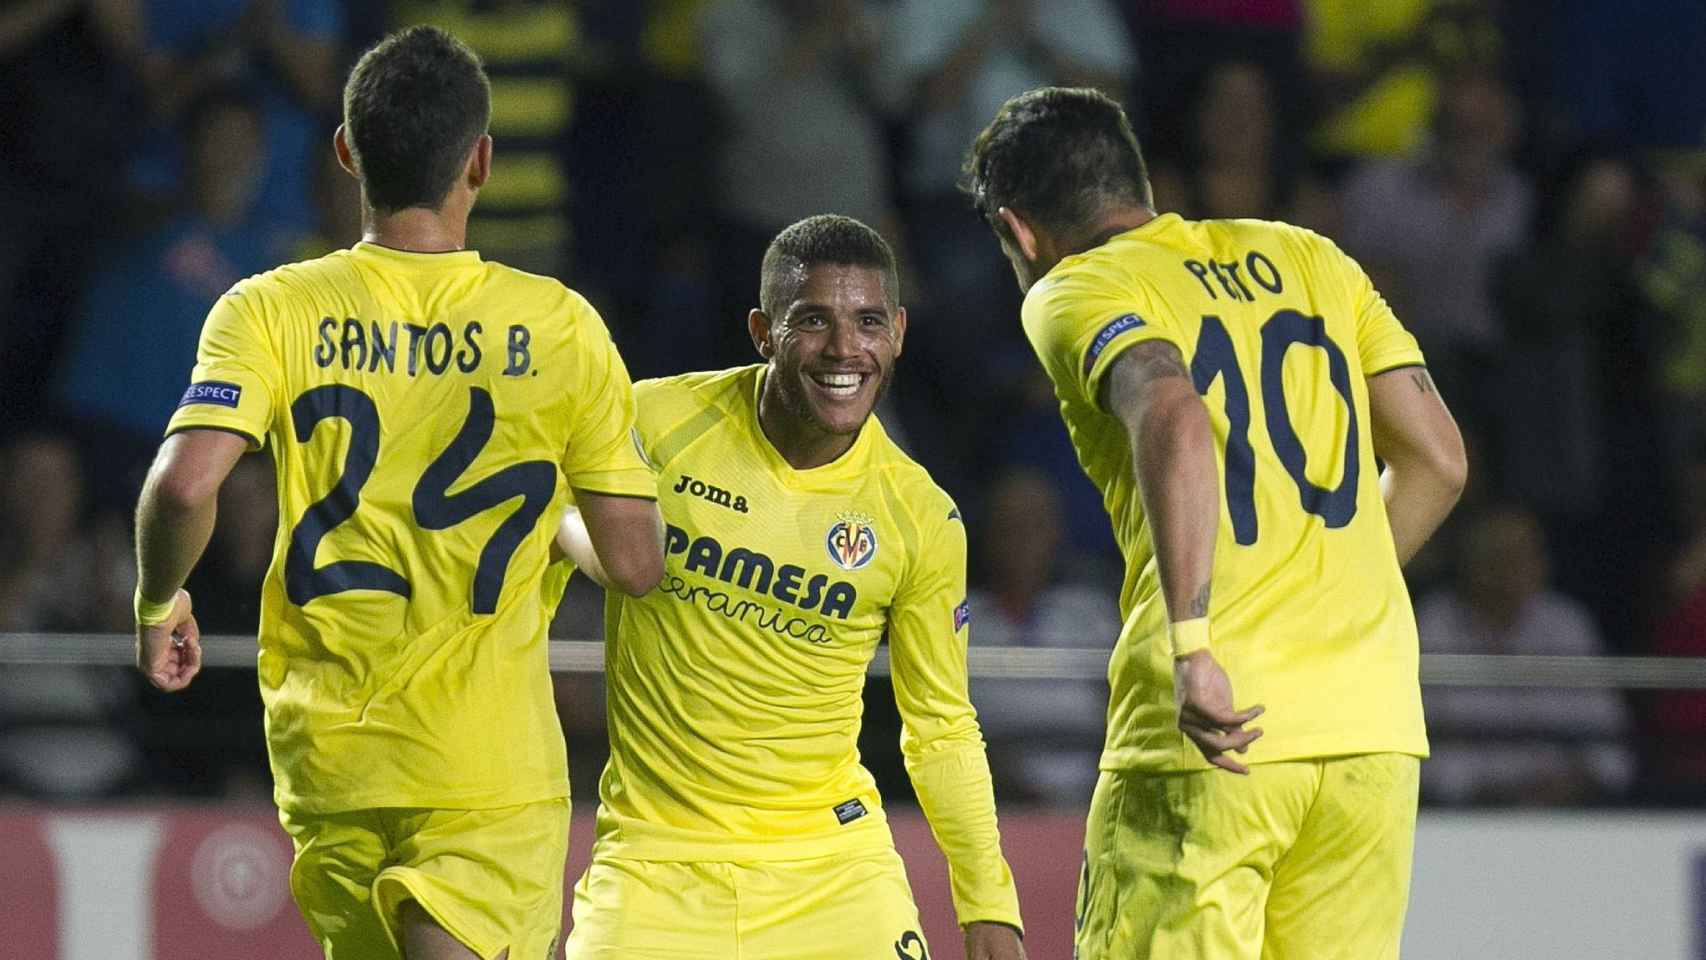 Pato, Santos Borré y Dos Santos celebran un gol.